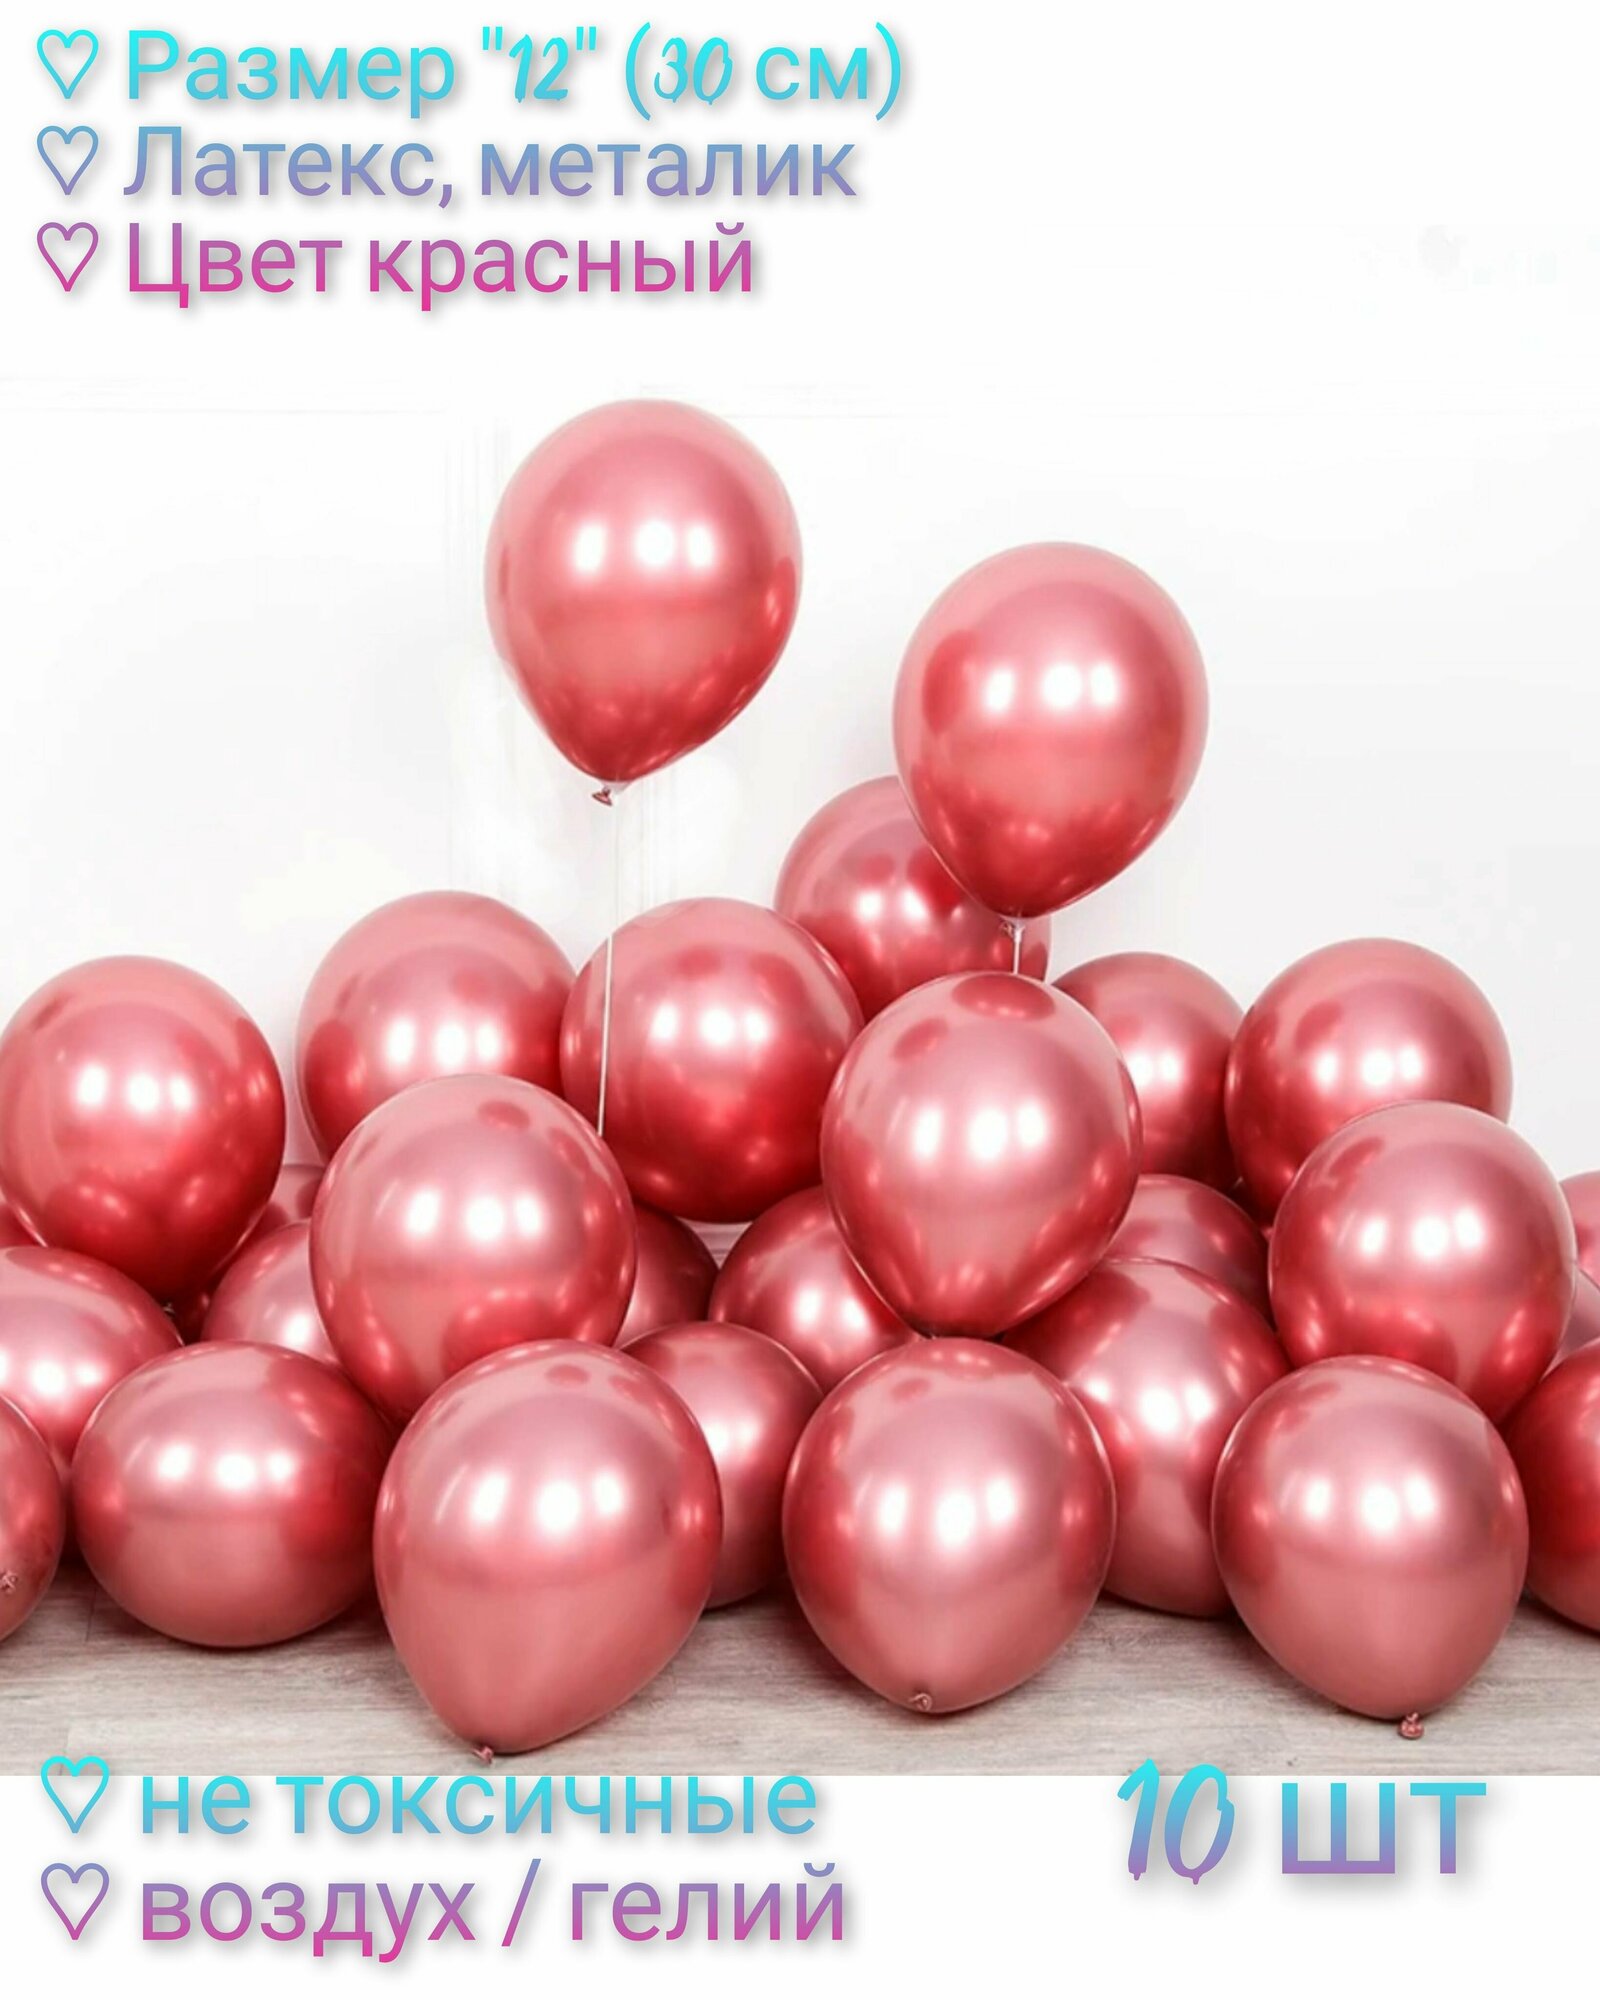 Набор Воздушных шаров "12" (30 см) - 10 шт, латекс, металлик. Цвет красный.